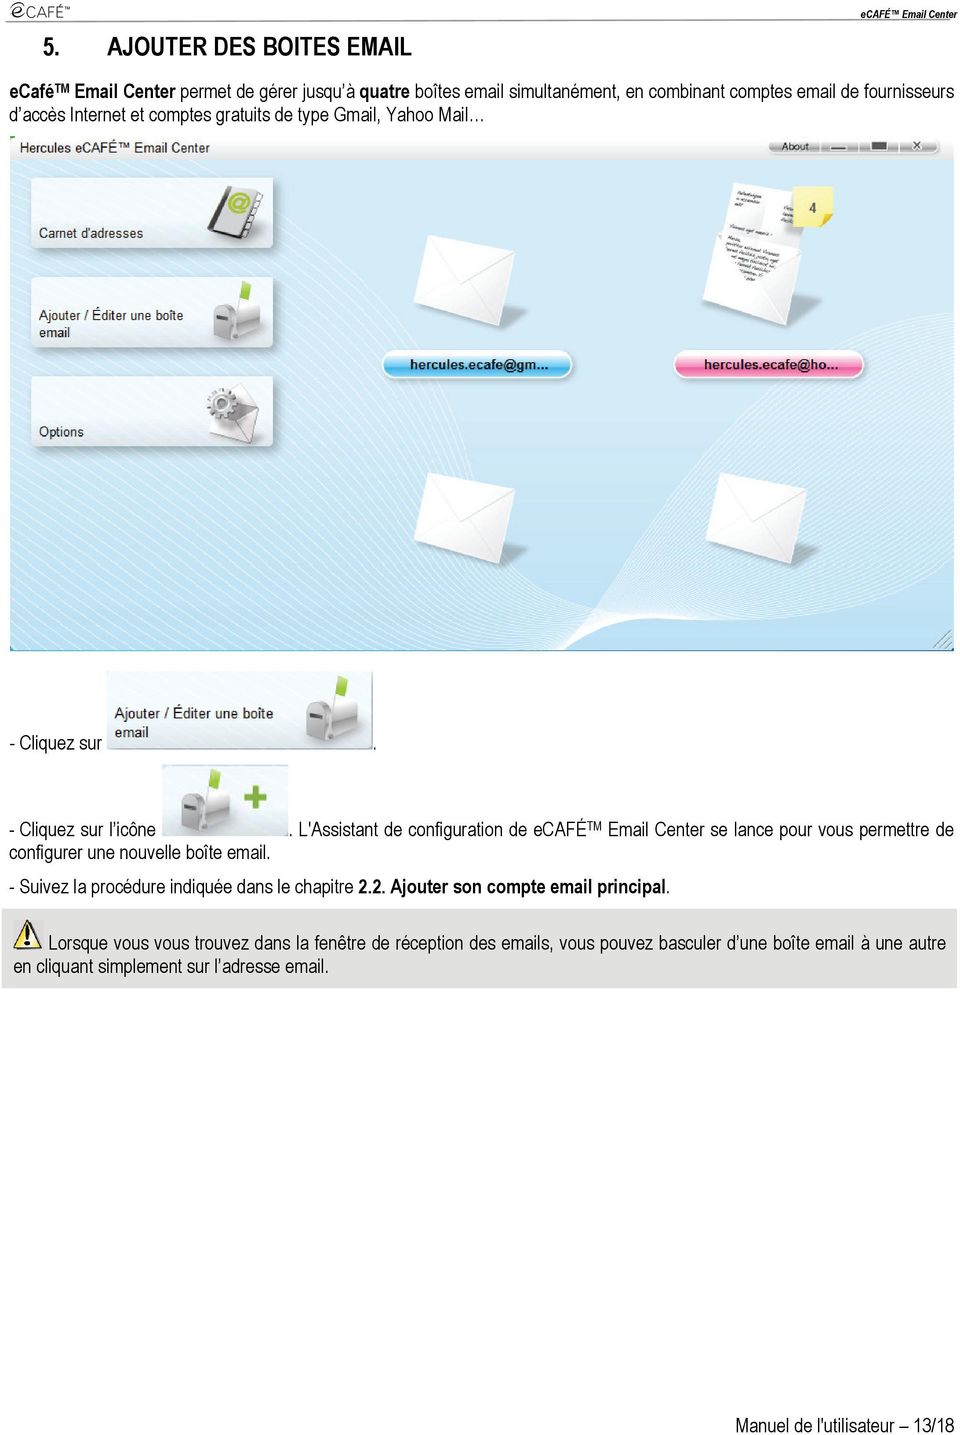 L'Assistant de configuration de ecafé TM Email Center se lance pour vous permettre de configurer une nouvelle boîte email.